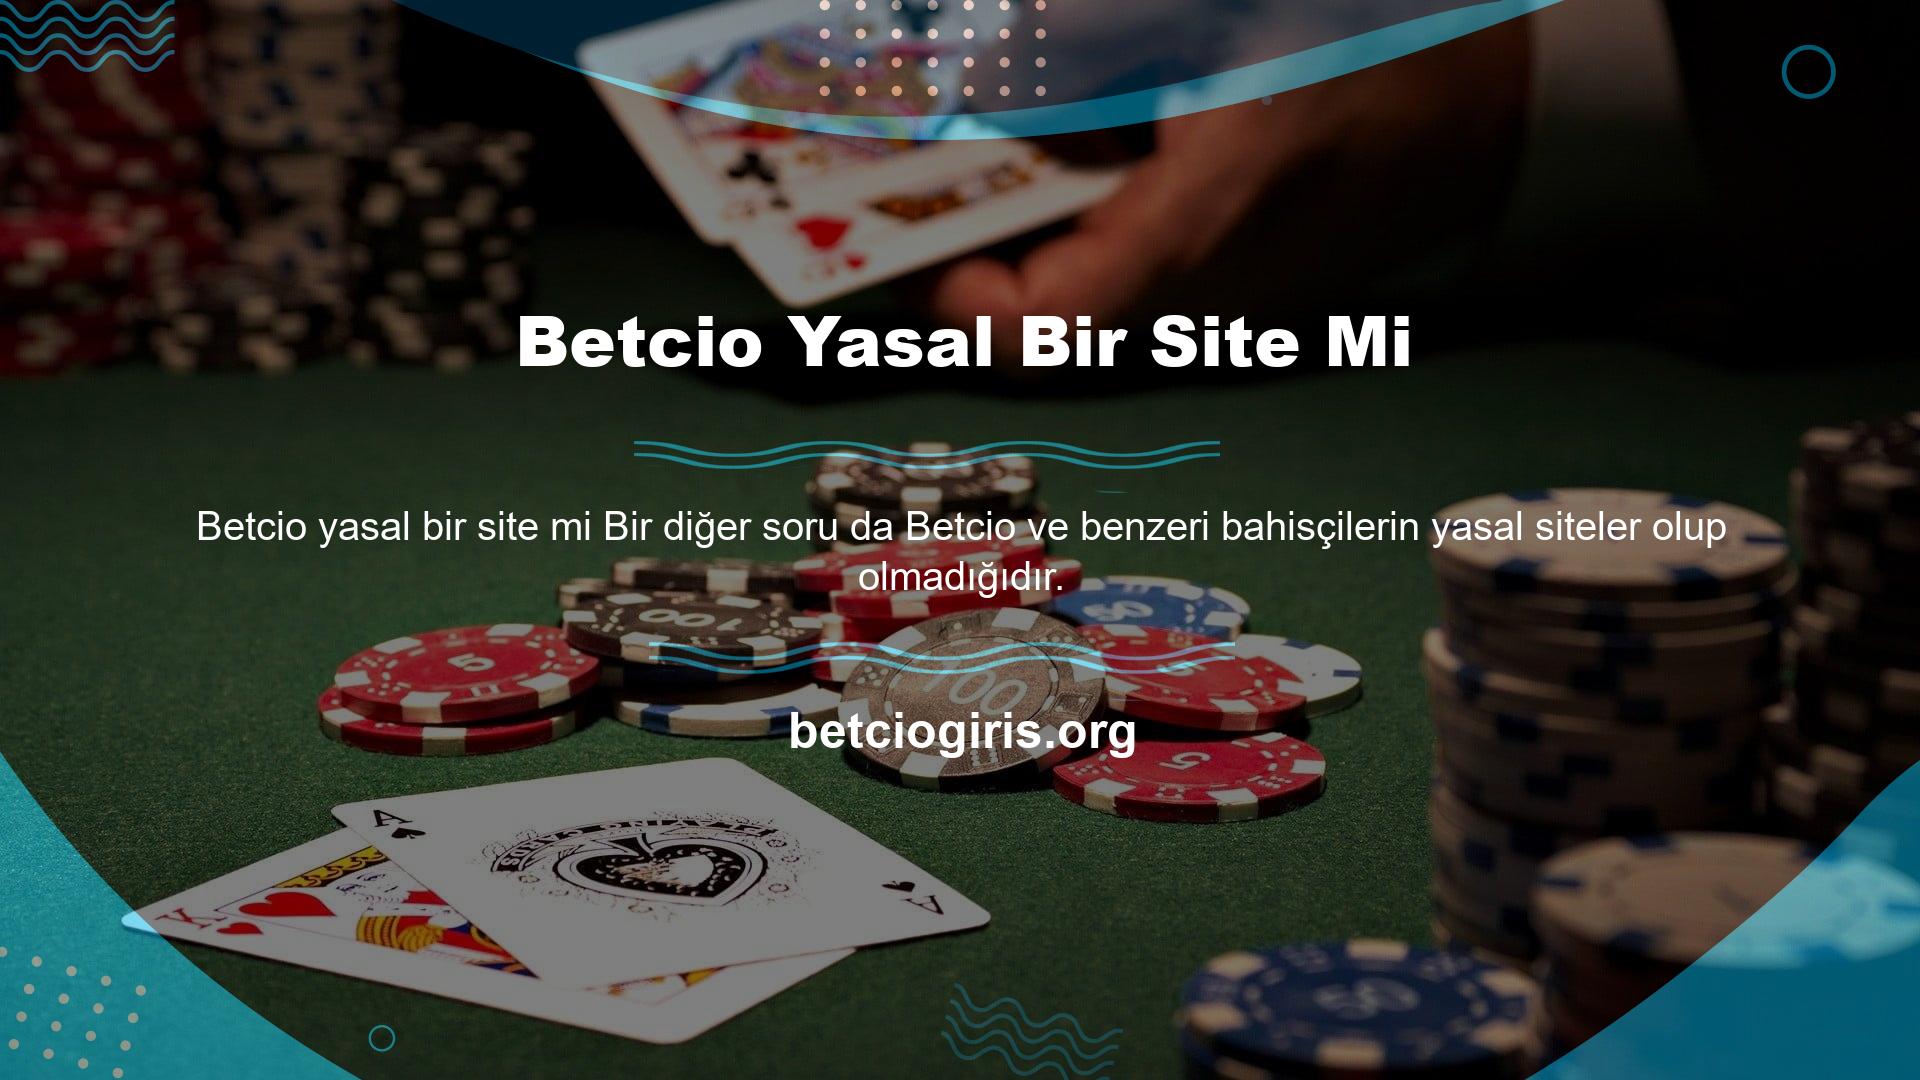 Sevgili oyuncu, Betcio yasa dışı bir kumar sitesidir